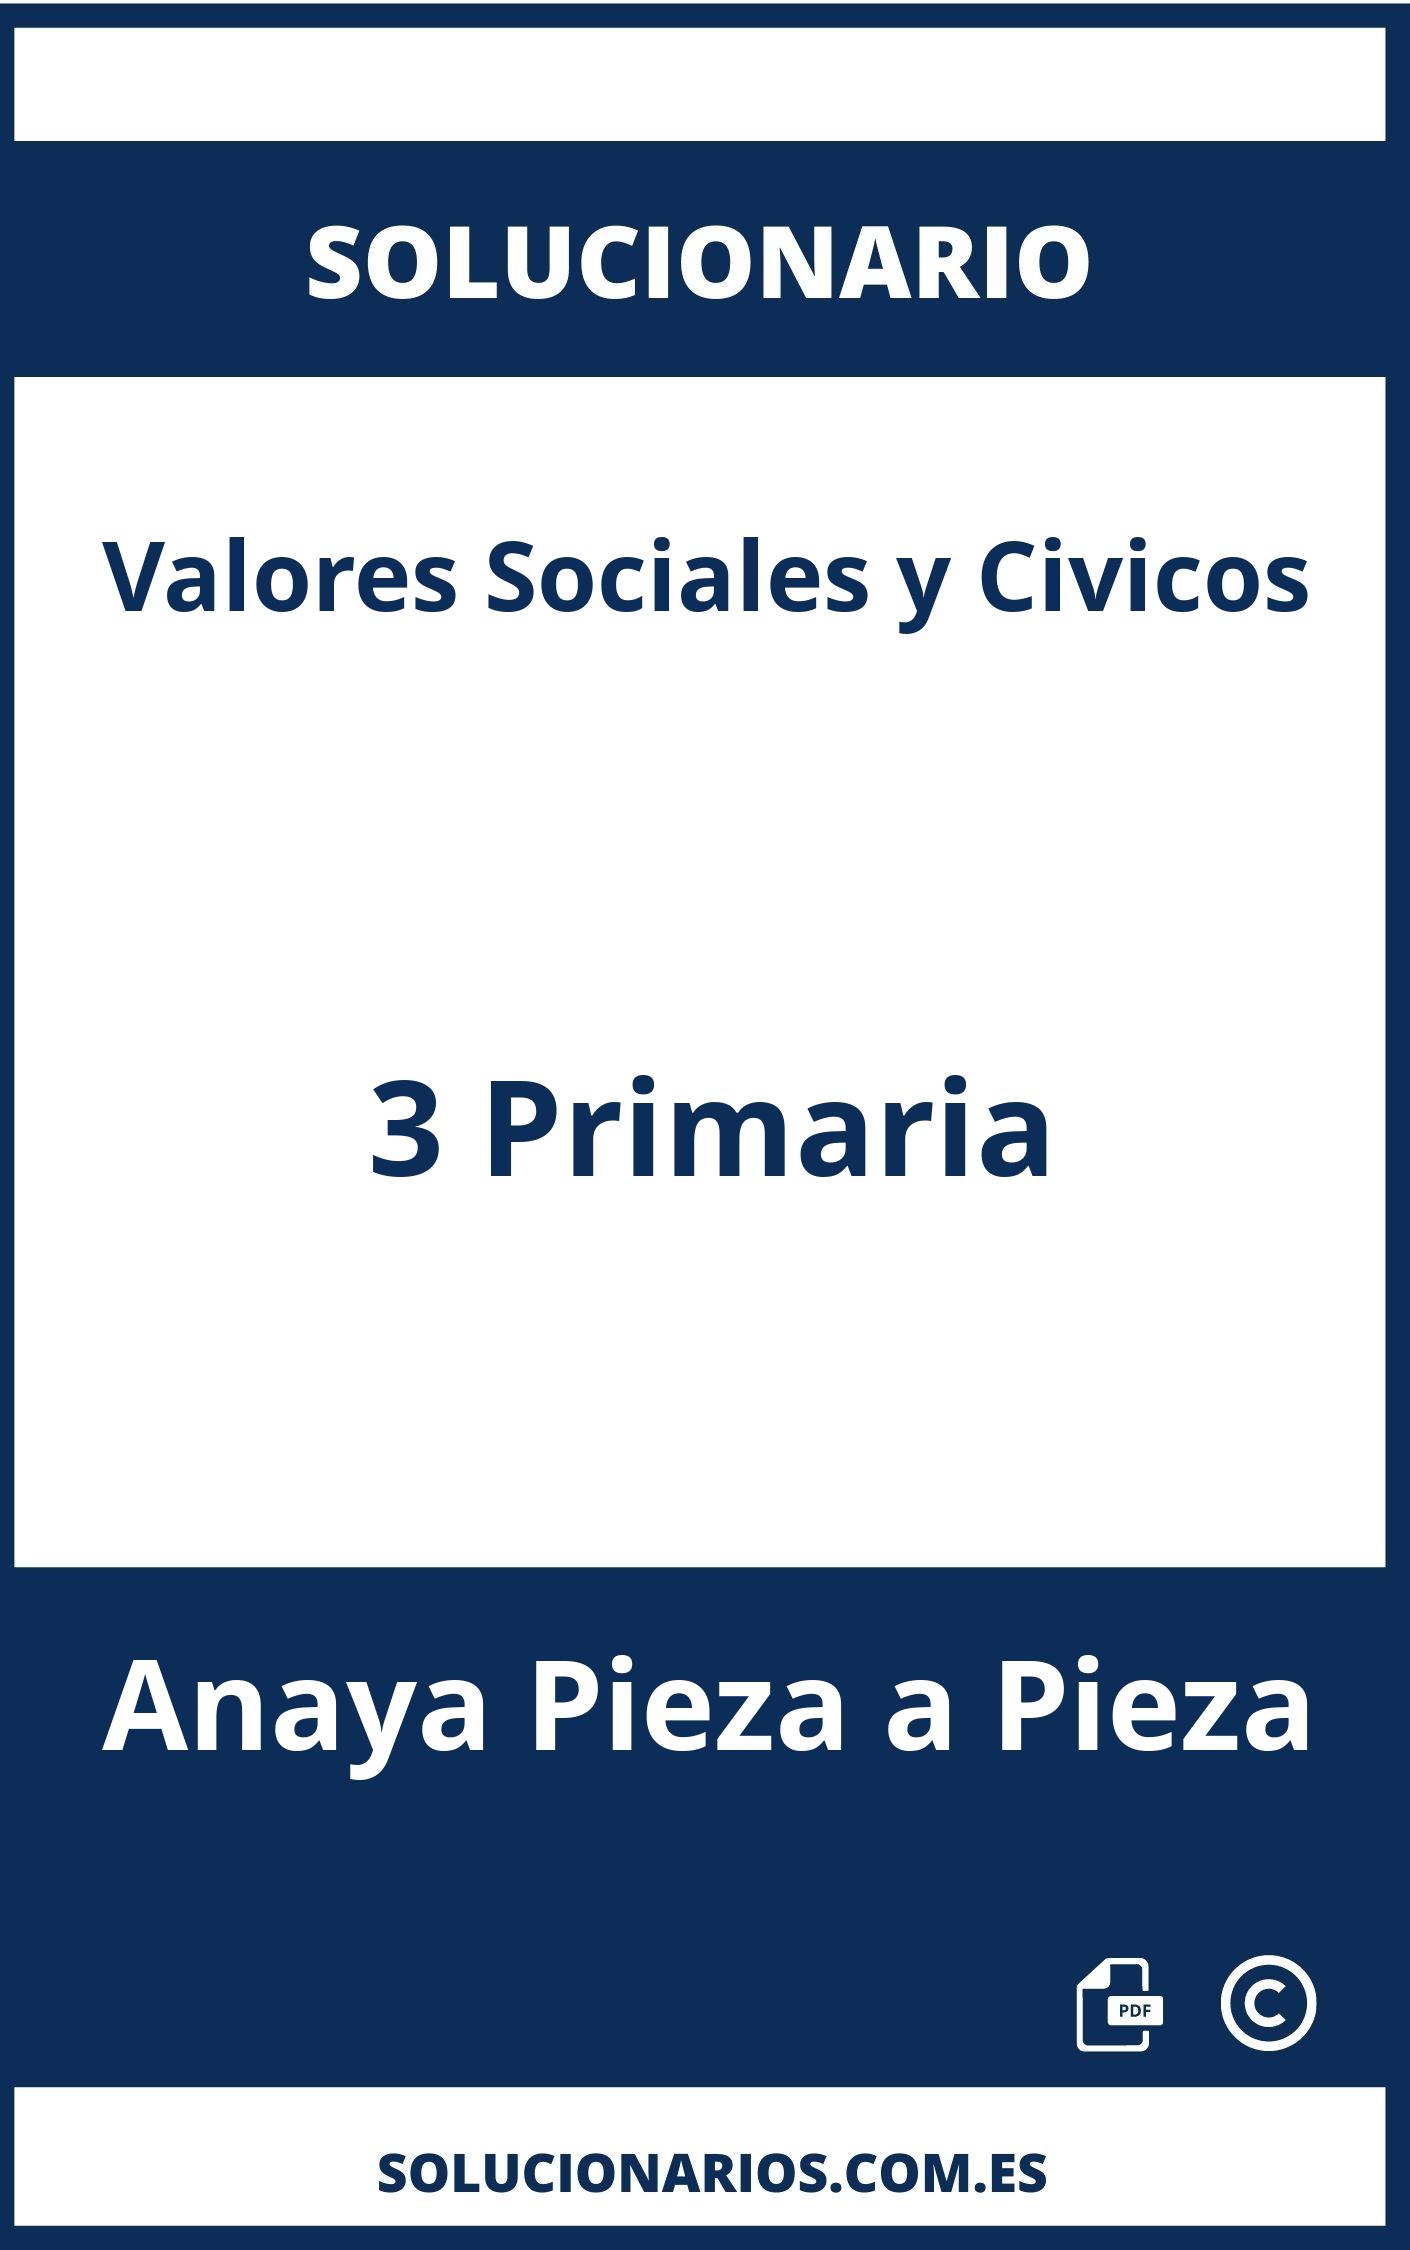 Solucionario Valores Sociales y Civicos 3 Primaria Anaya Pieza a Pieza